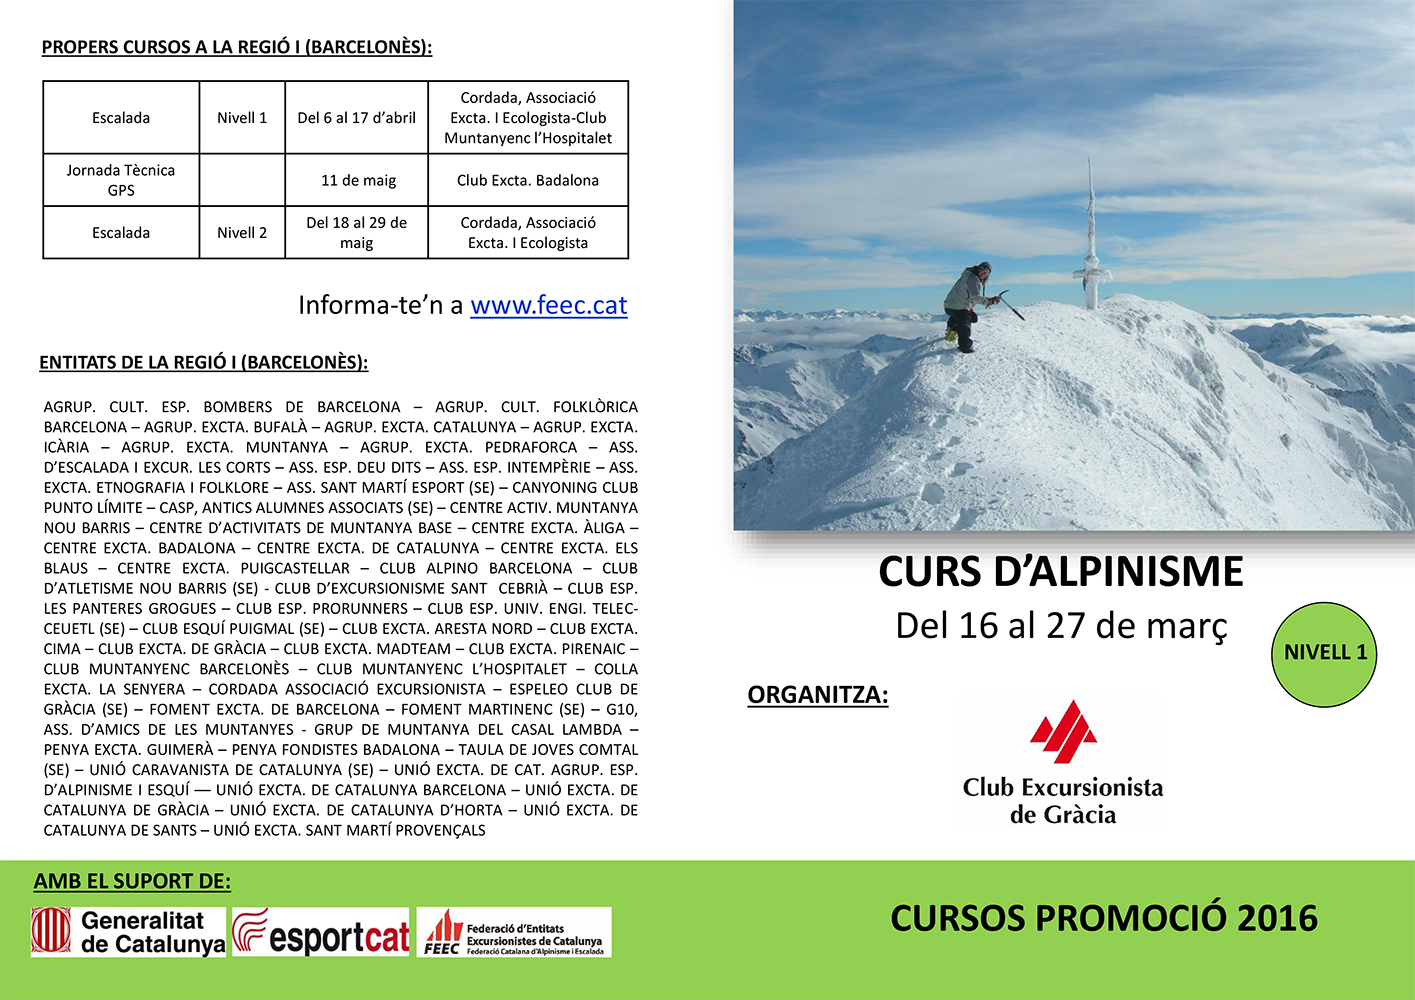 Curs d’Alpinisme Nivell 1 del 16 al 27 de març